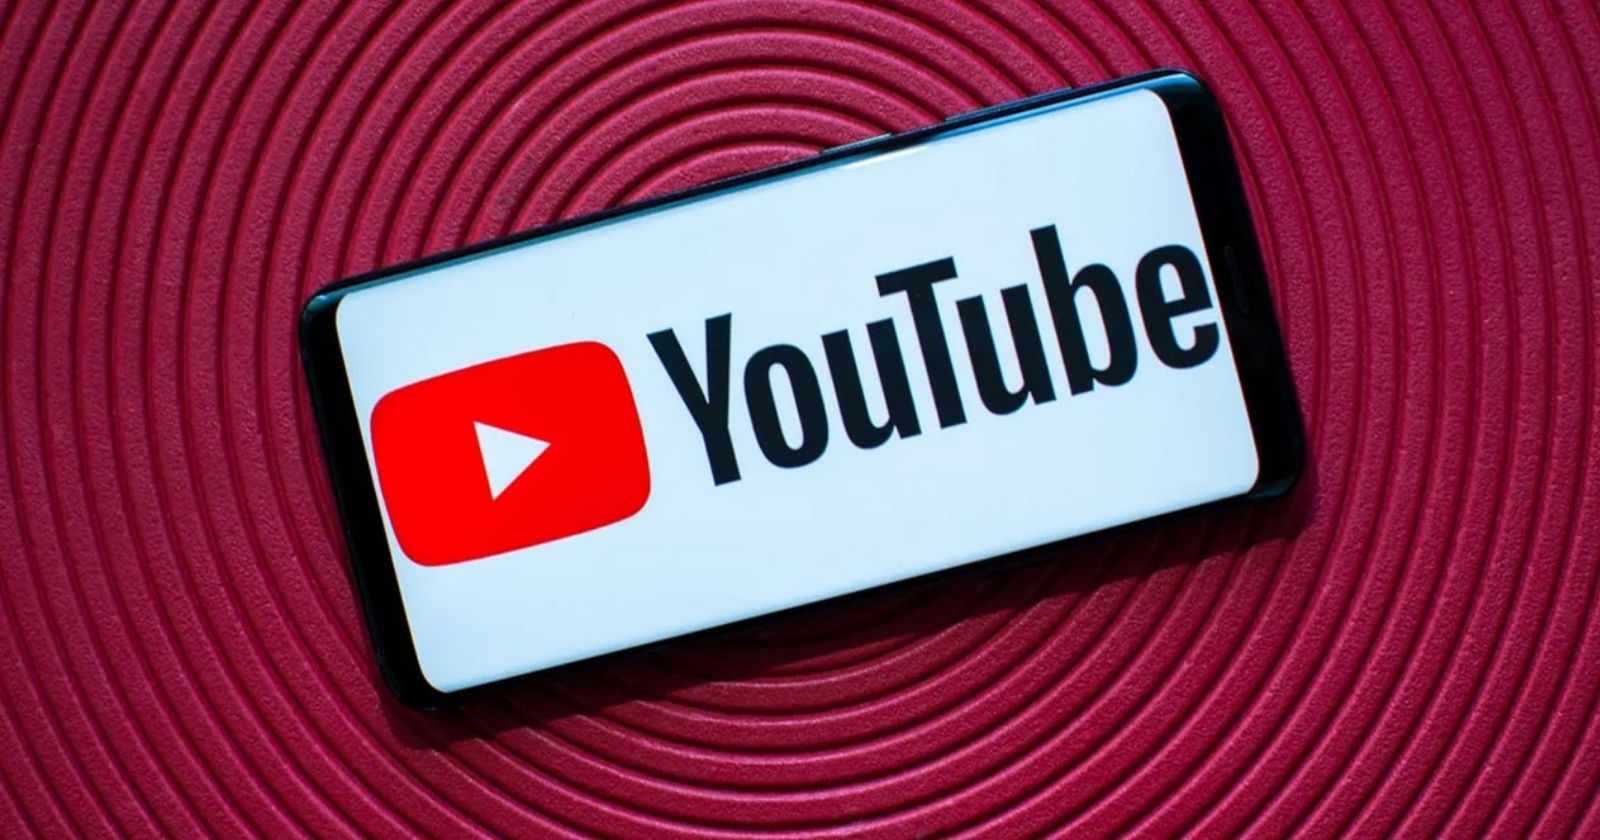 YouTube'un reklam engelleyici tespit sistemi yasa dışı olabilir!